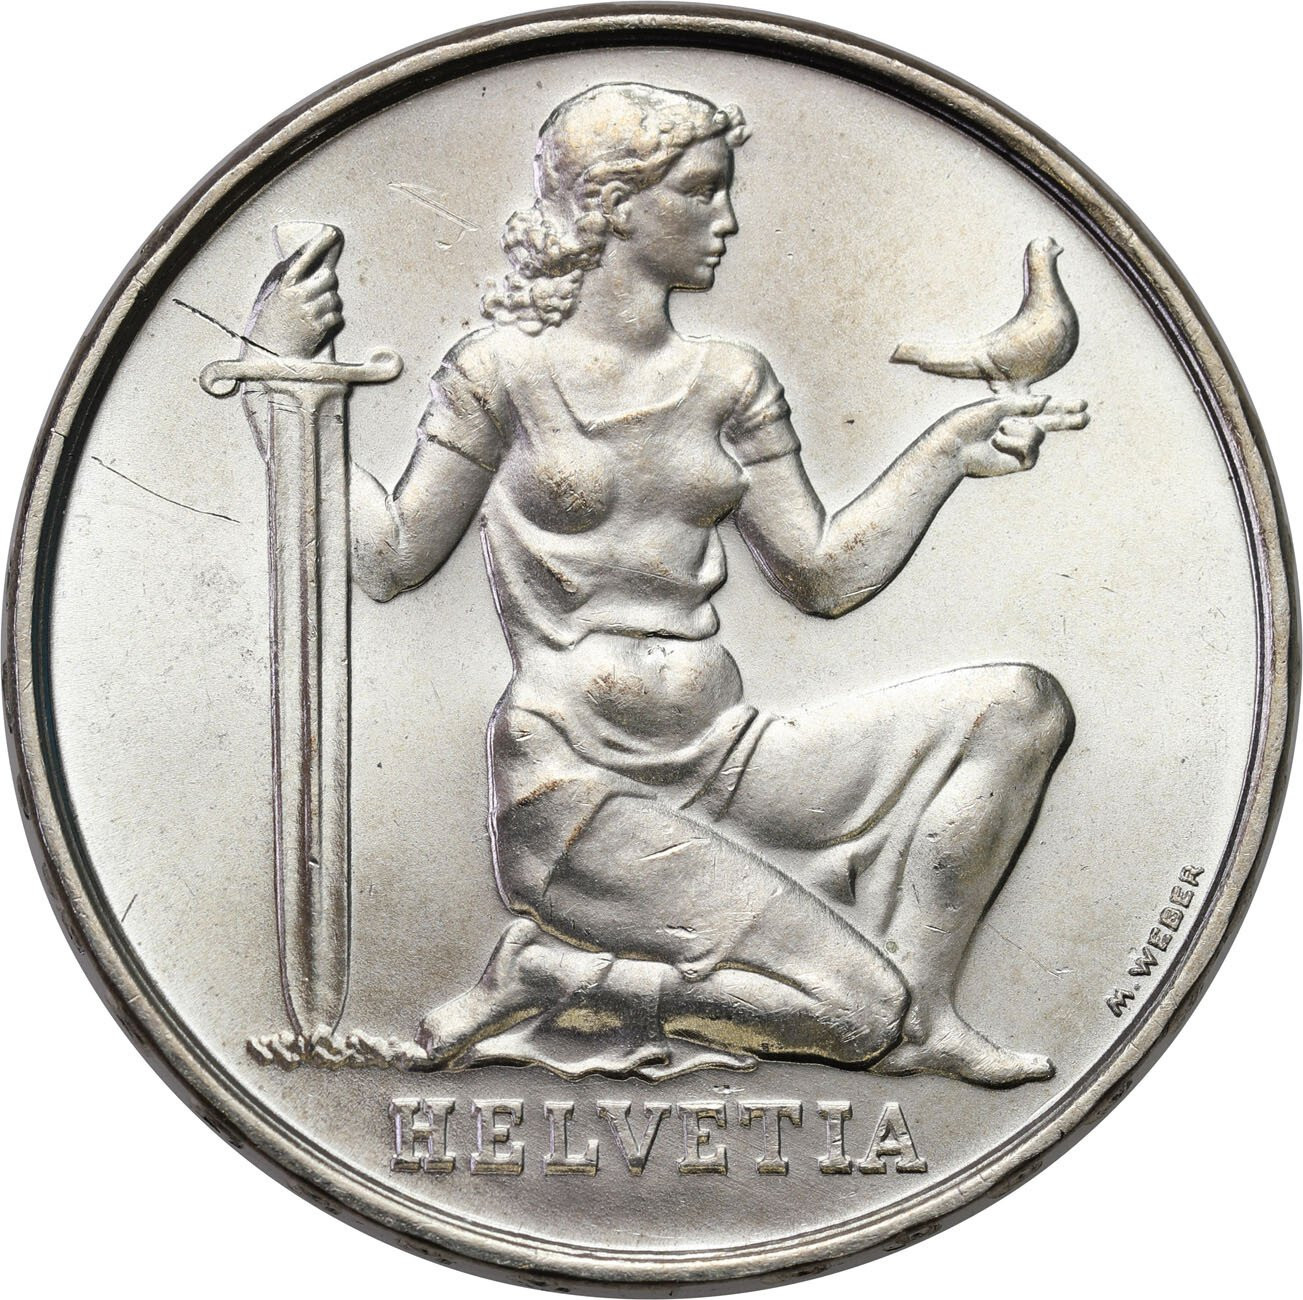 Szwajcaria. 5 franków 1936 B, Berno – RZADSZE